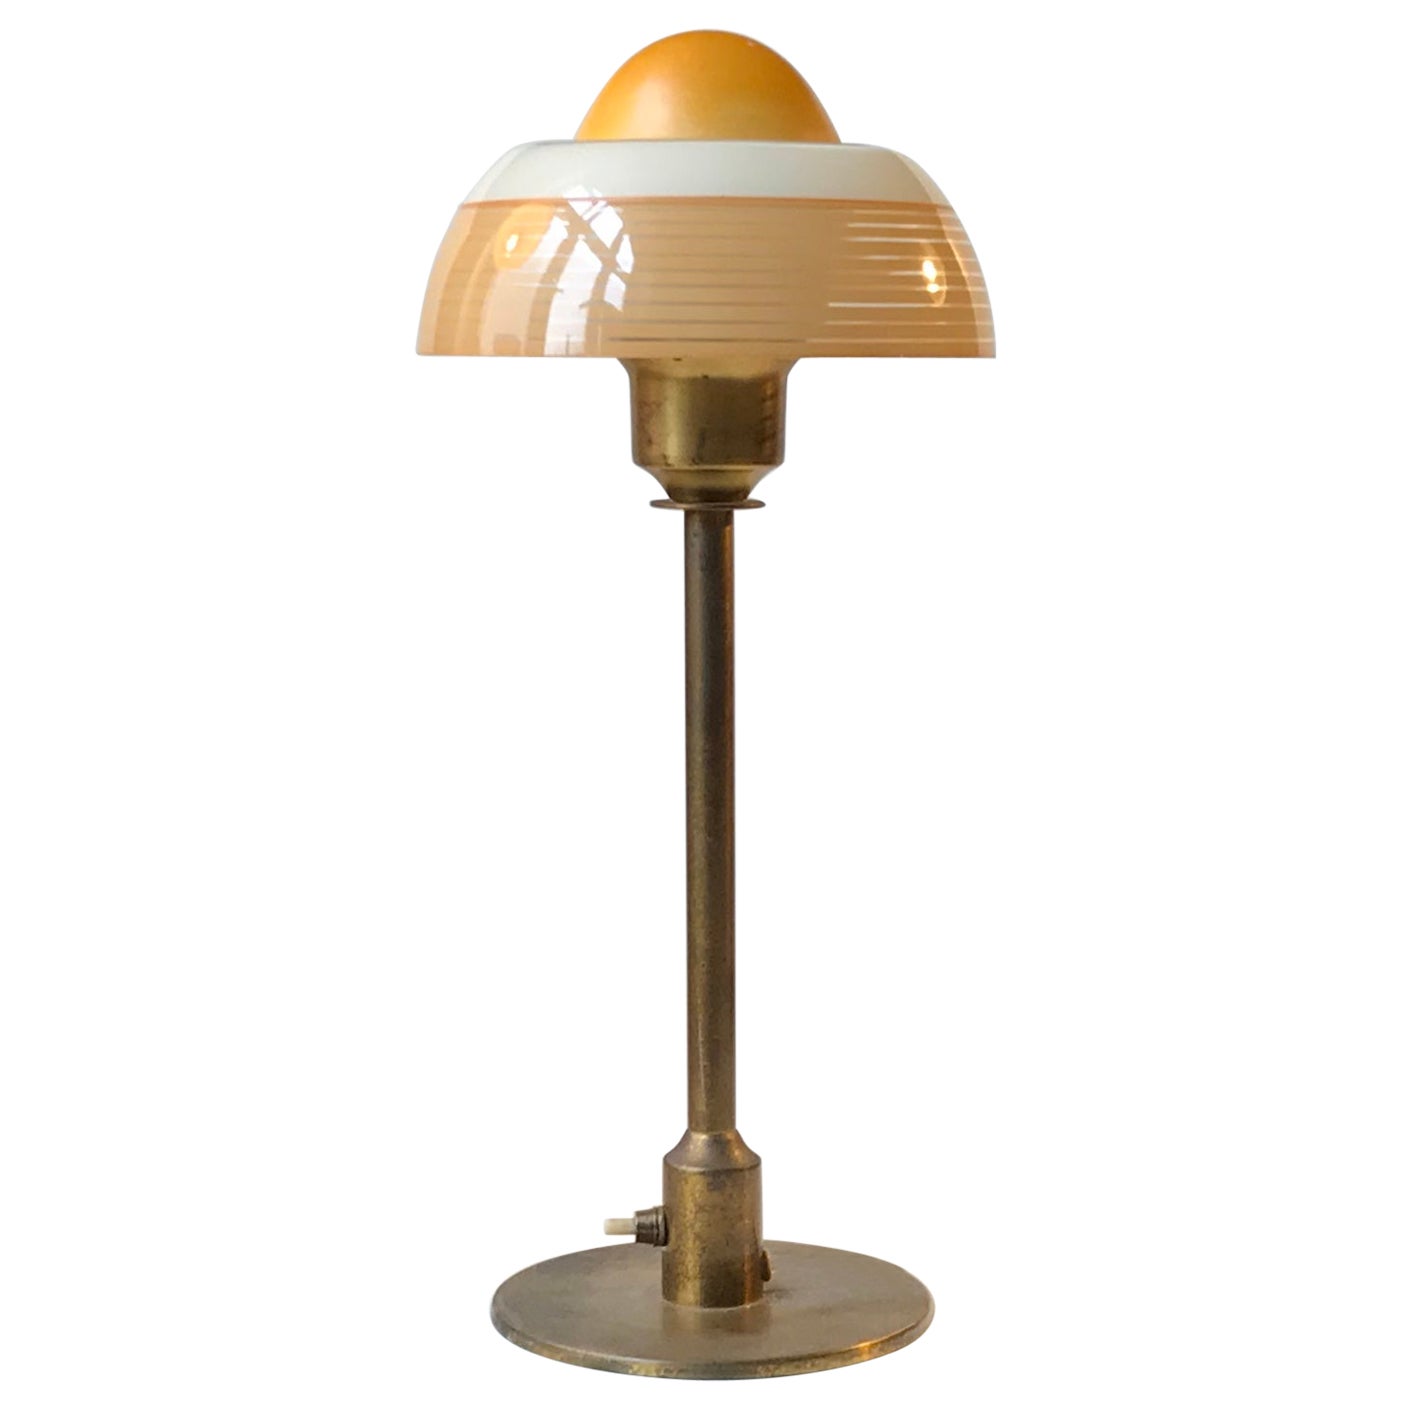 Fog & Morup Art Deco Table Lamp 'The Fried Egg', 1930s